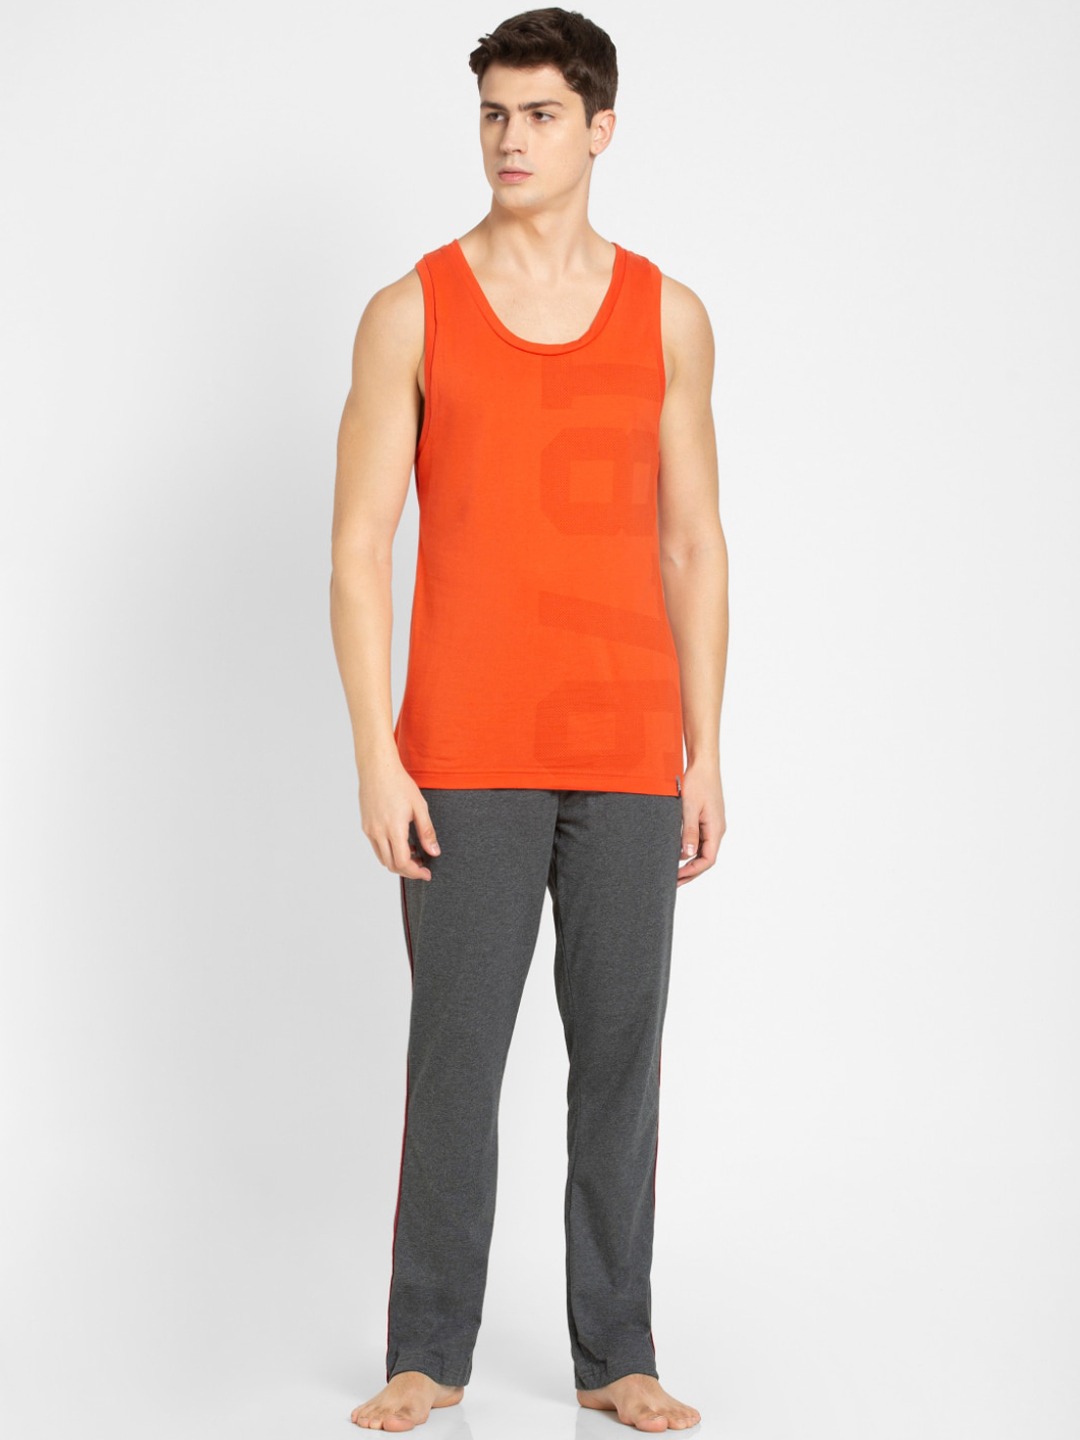 Clothing Innerwear Vests | Jockey Men Orange Printed Tank Top - KK08102